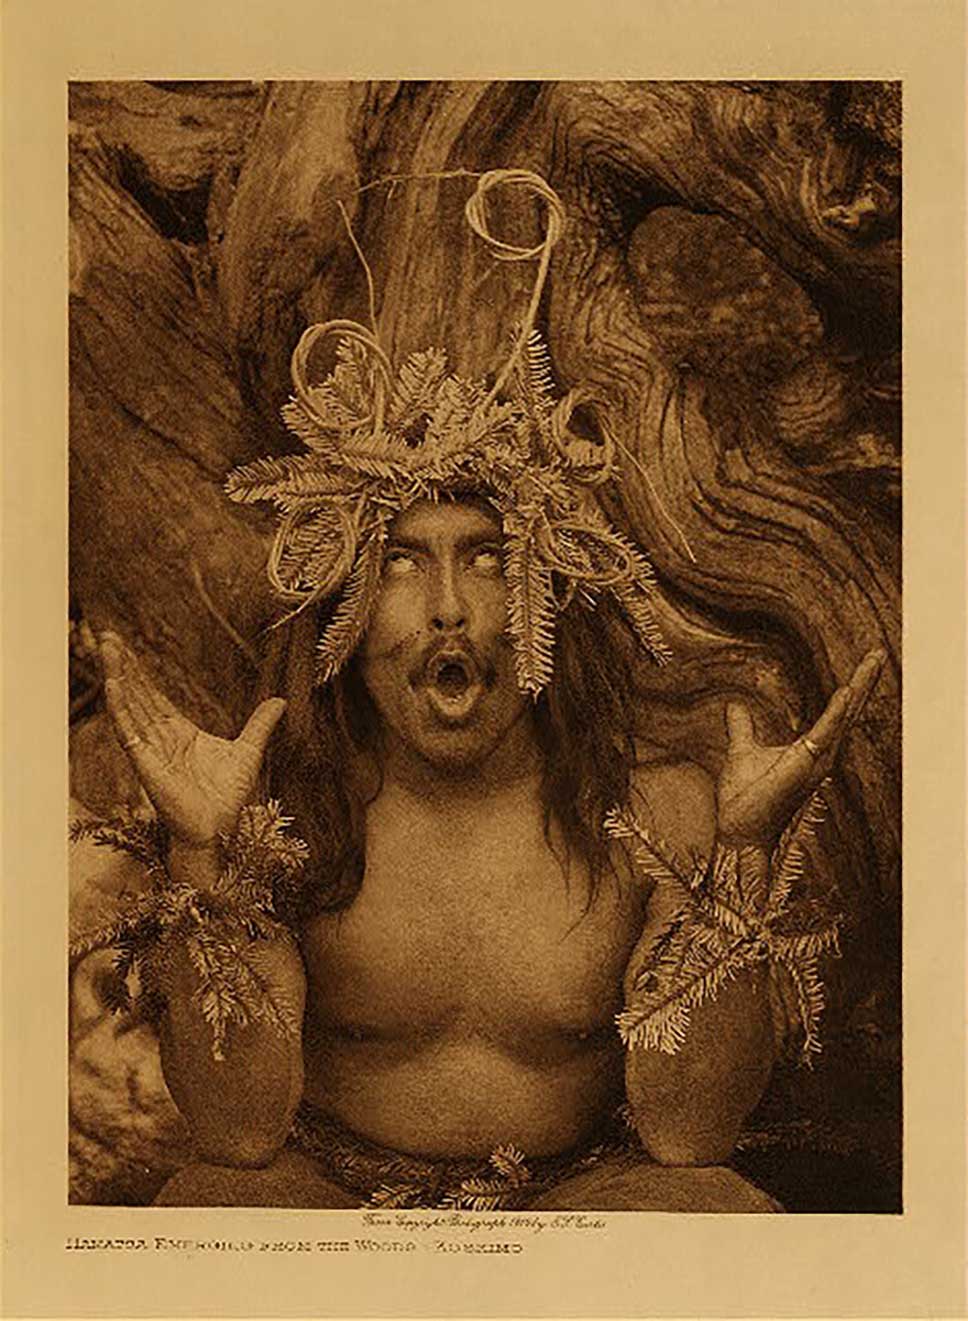 Photographie sépia par Edward Curtis un danseur Hamatsa possédé, couvert de branchages, la bouche ouverte, les yeux révulsés et les mains tournés vers le ciel, en 1910